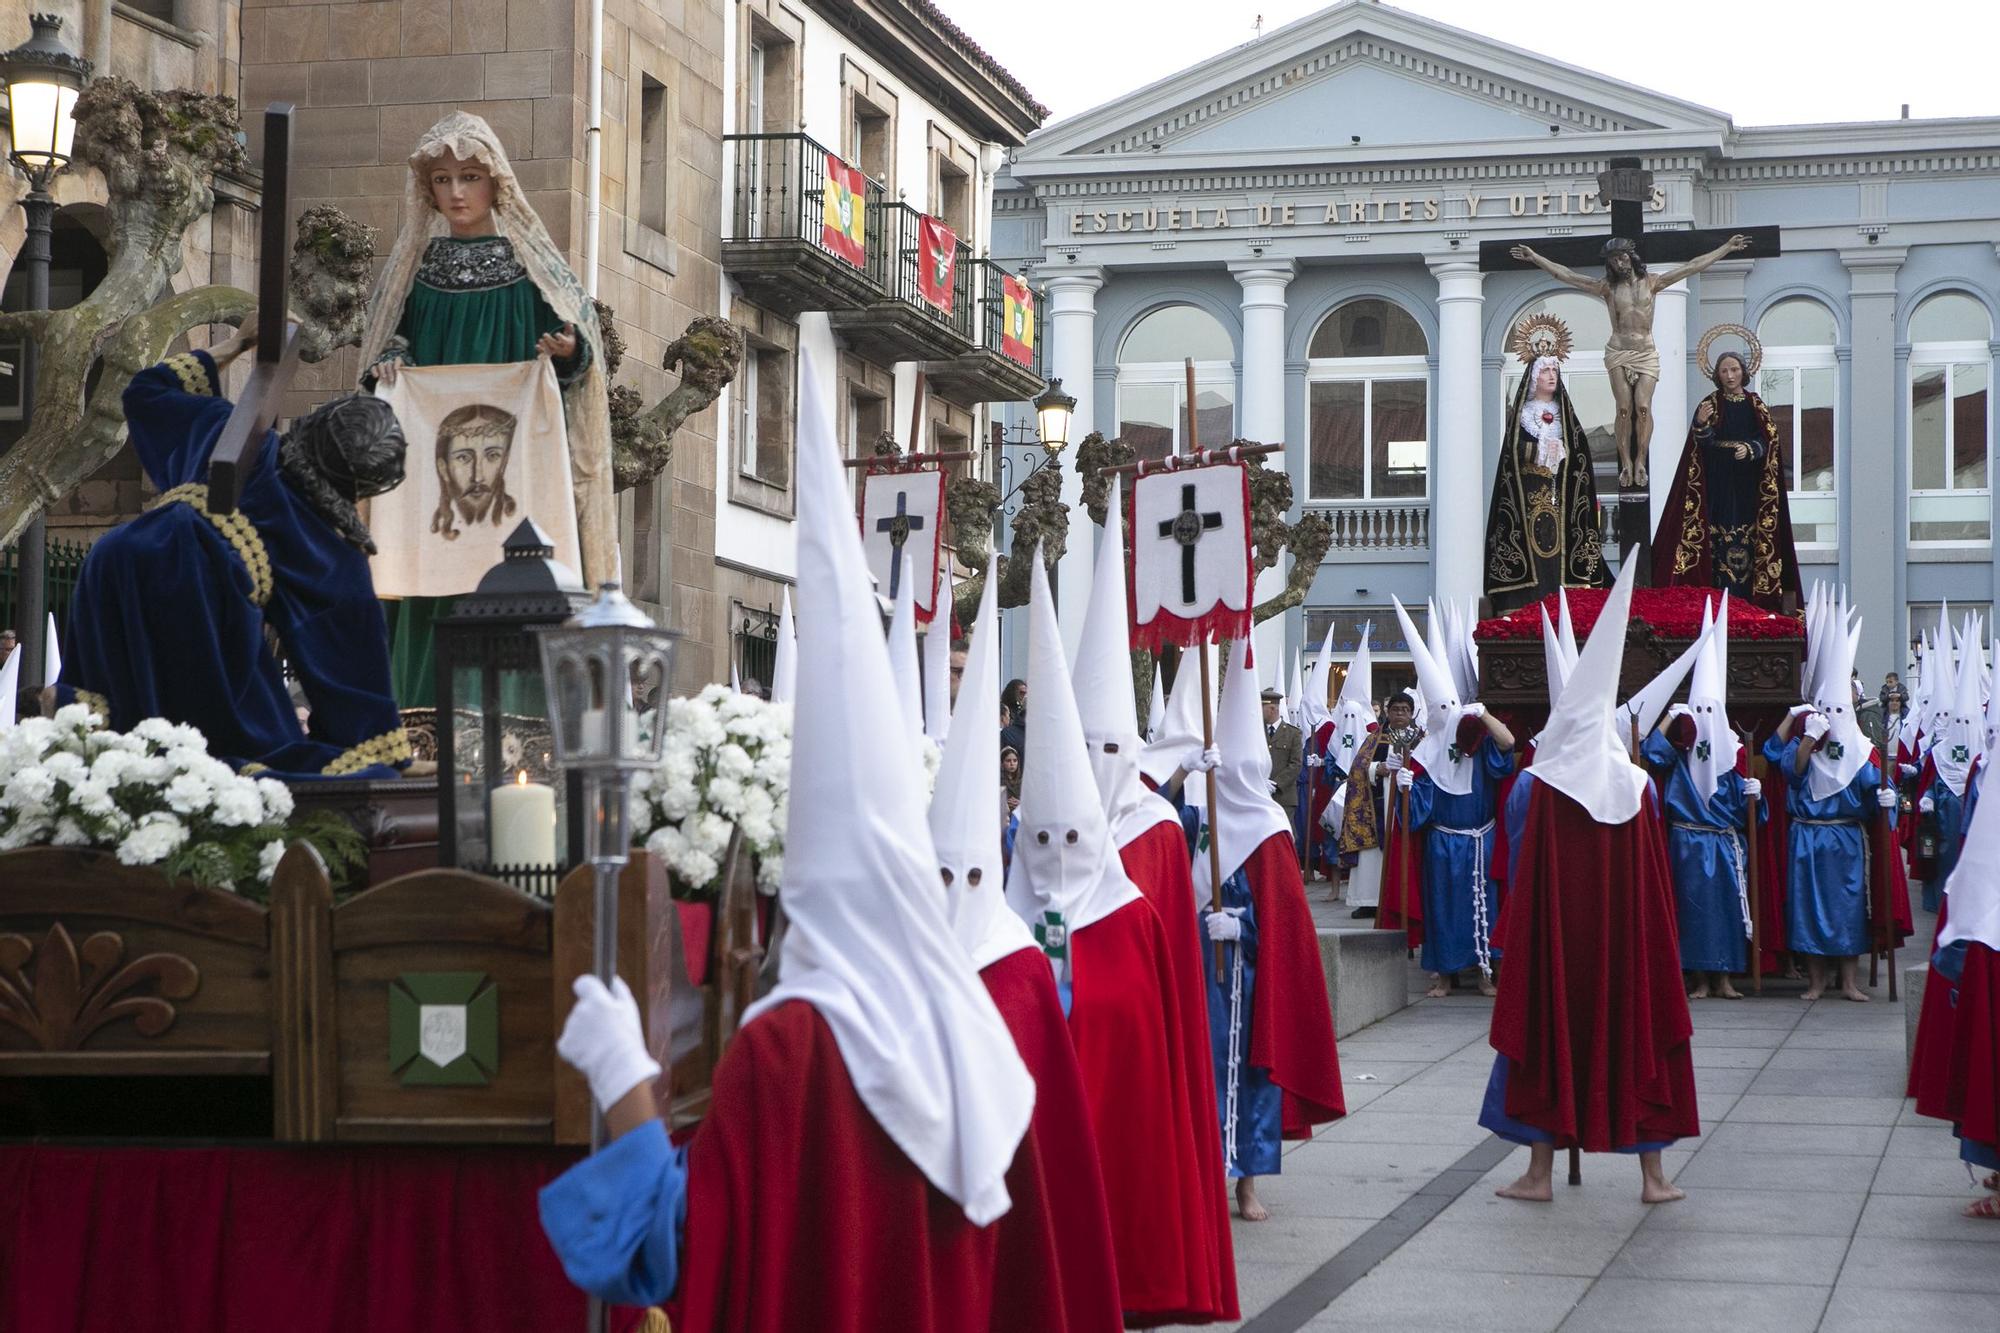 Jueves Santo en Avilés: Procesión del Silencio con los "sanjuaninos"